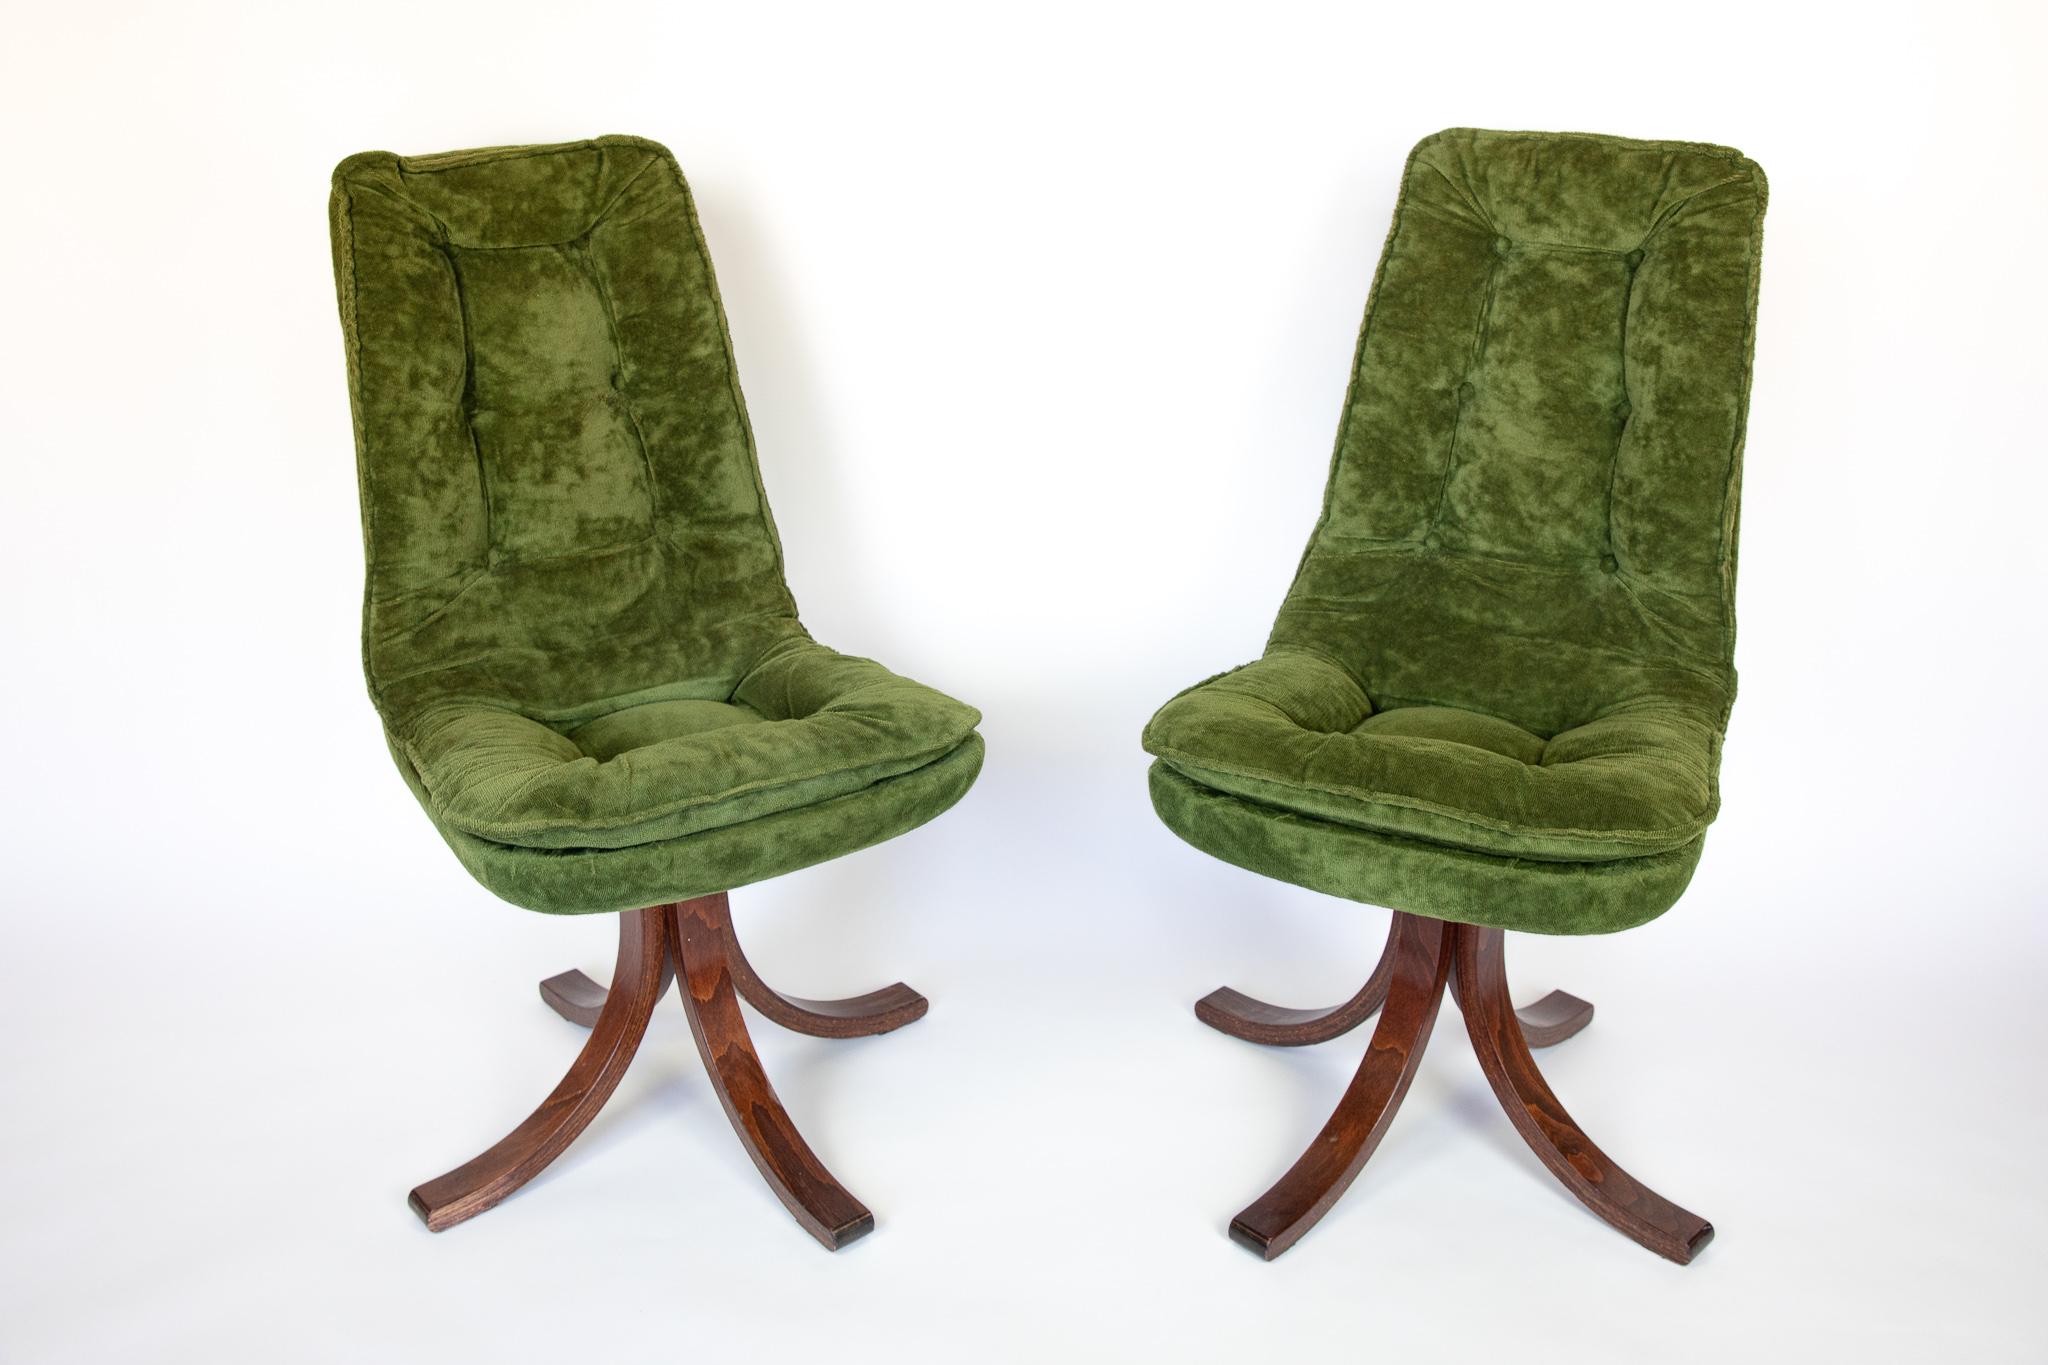 Chaises de salle à manger moderne du milieu du siècle en velours vert, Italie, 1970.

Quatre chaises de salle à manger ou de salon exquises avec un revêtement en velours vert étonnant qui rappelle les designs italiens de l'ère spatiale de Gastone